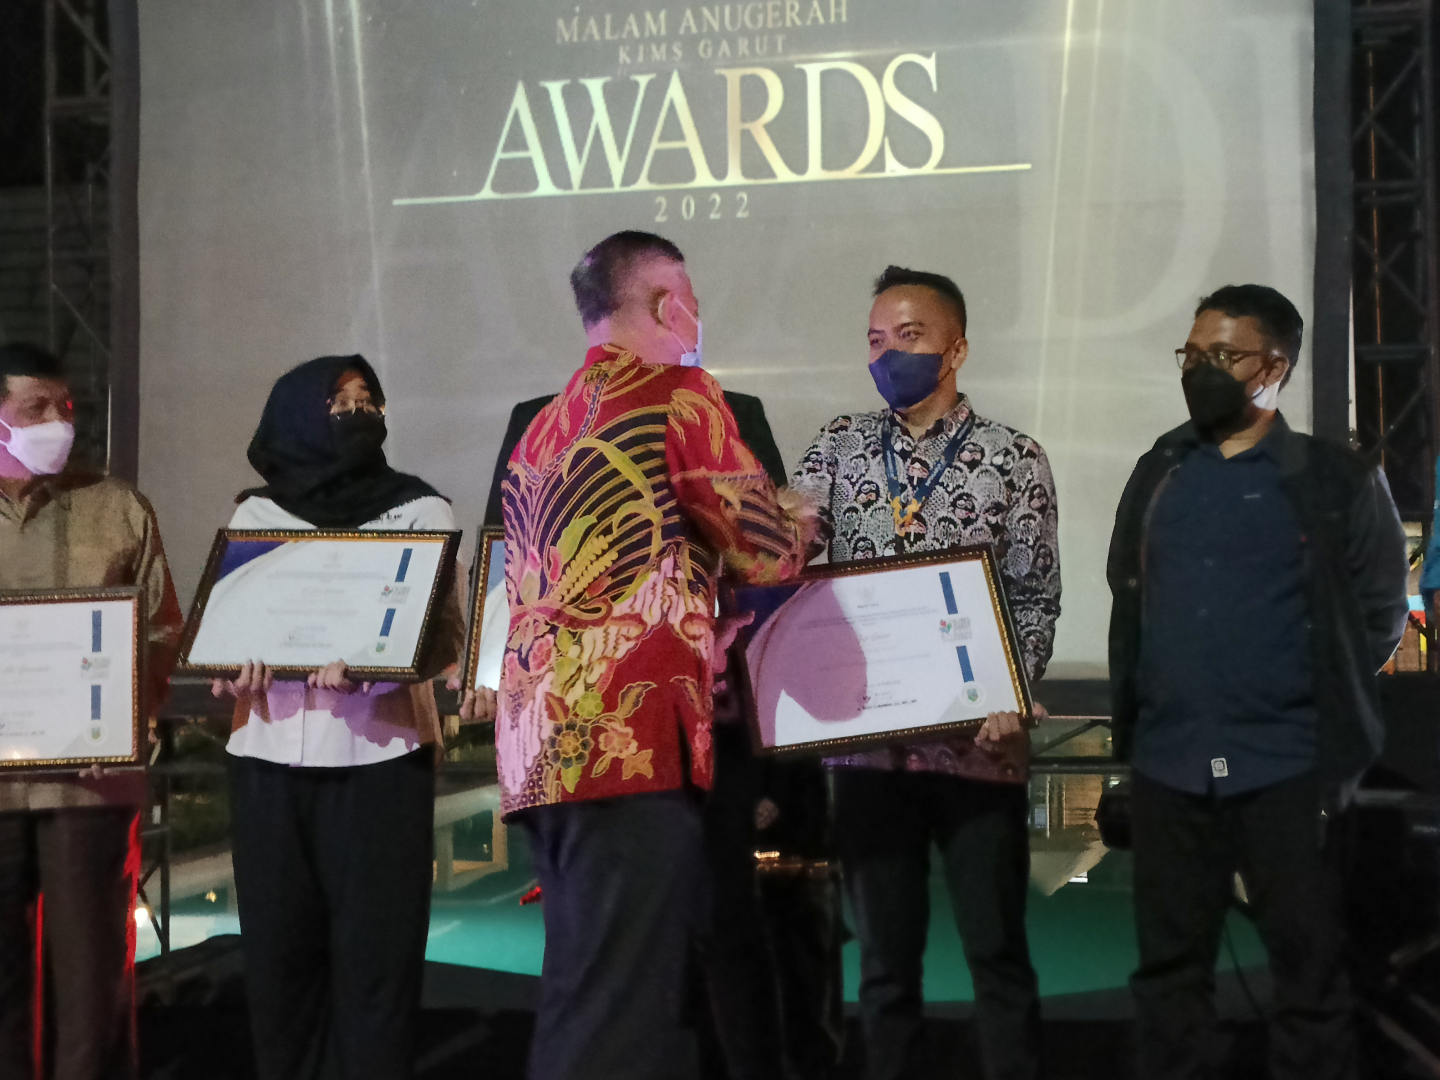 Infogarut Raih Penghargaan KIMS Garut Award 2022, sebagai Media Sosial Kreatif dan Informatif